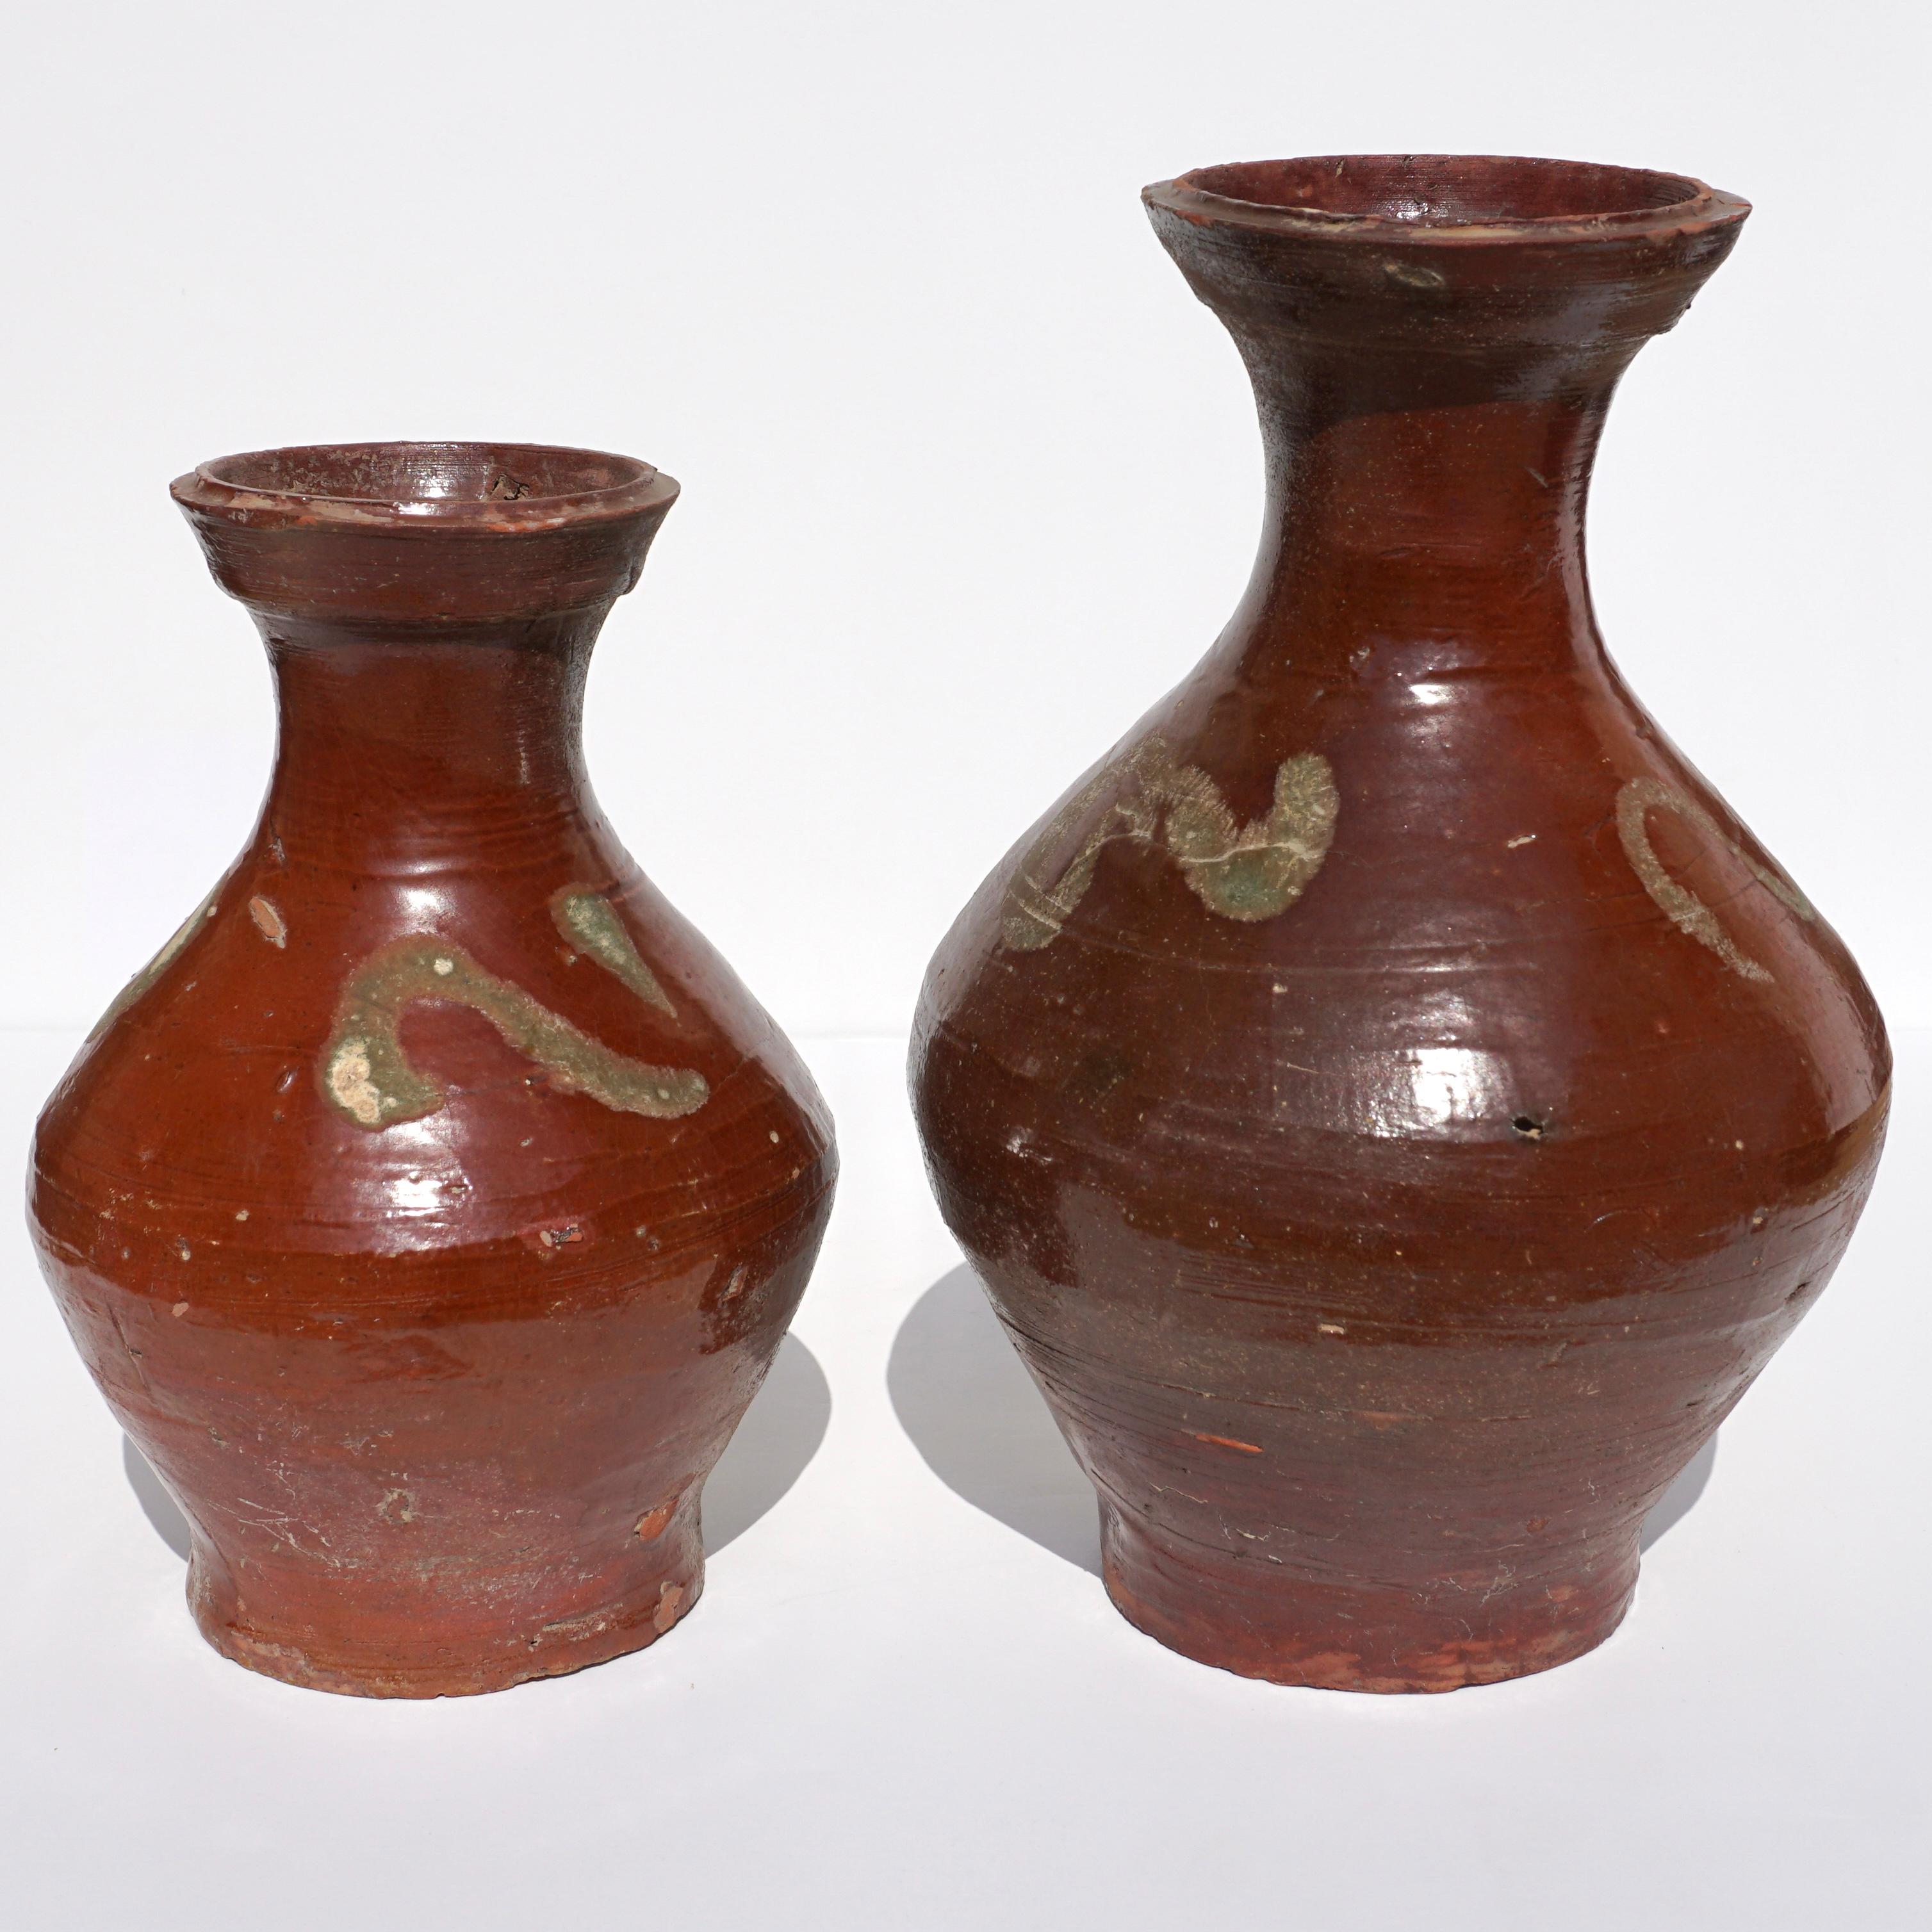 C. AD 618-907. Tang-Dynastie. 

Zwei schöne Terrakotta-Gefäße mit einer Glasur aus Ochsenblut und kastanienfarbener Farbe. Die bauchigen Körper verjüngen sich in einen schlanken Hals mit ausgestelltem Rand. Die Schultern sind mit wellenförmigen